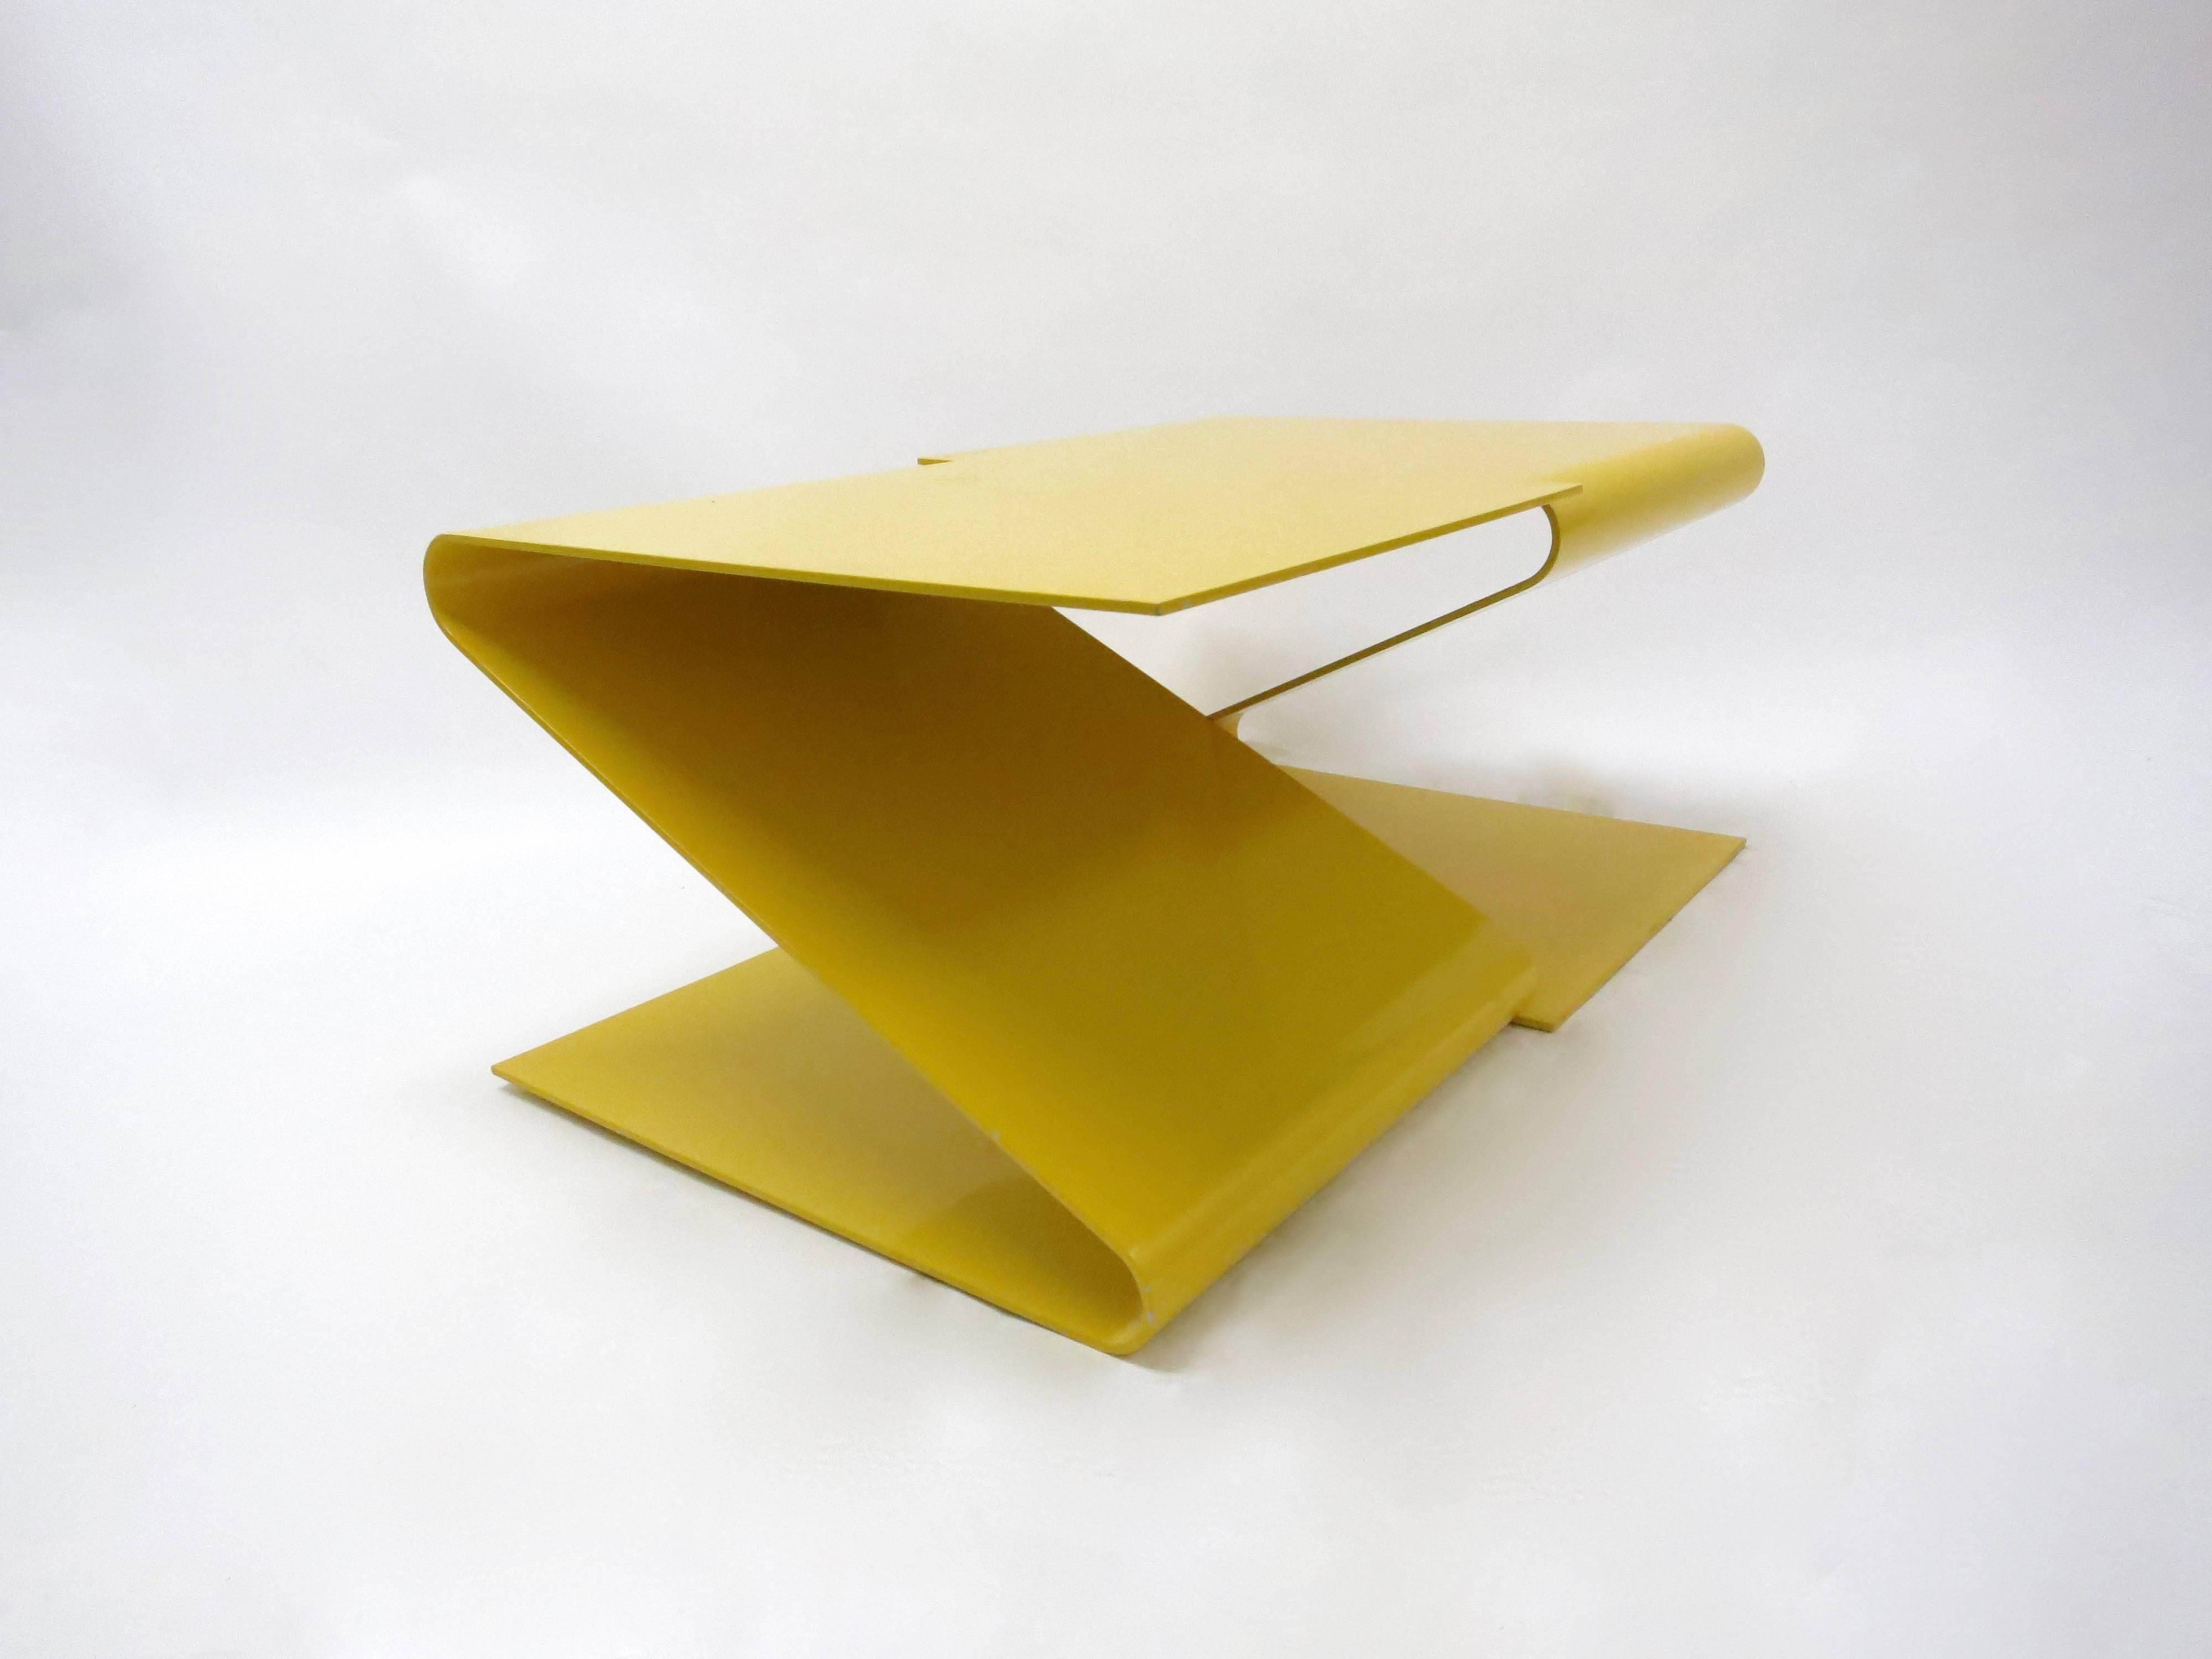 La table à café ou à cocktail géométrique conçue par L.E.FT Architects se compose d'une seule pièce d'acier émaillé jaune, coupée et pliée, comportant deux segments en forme de Z qui se reflètent, avec des courbes arrondies et des angles droits sur